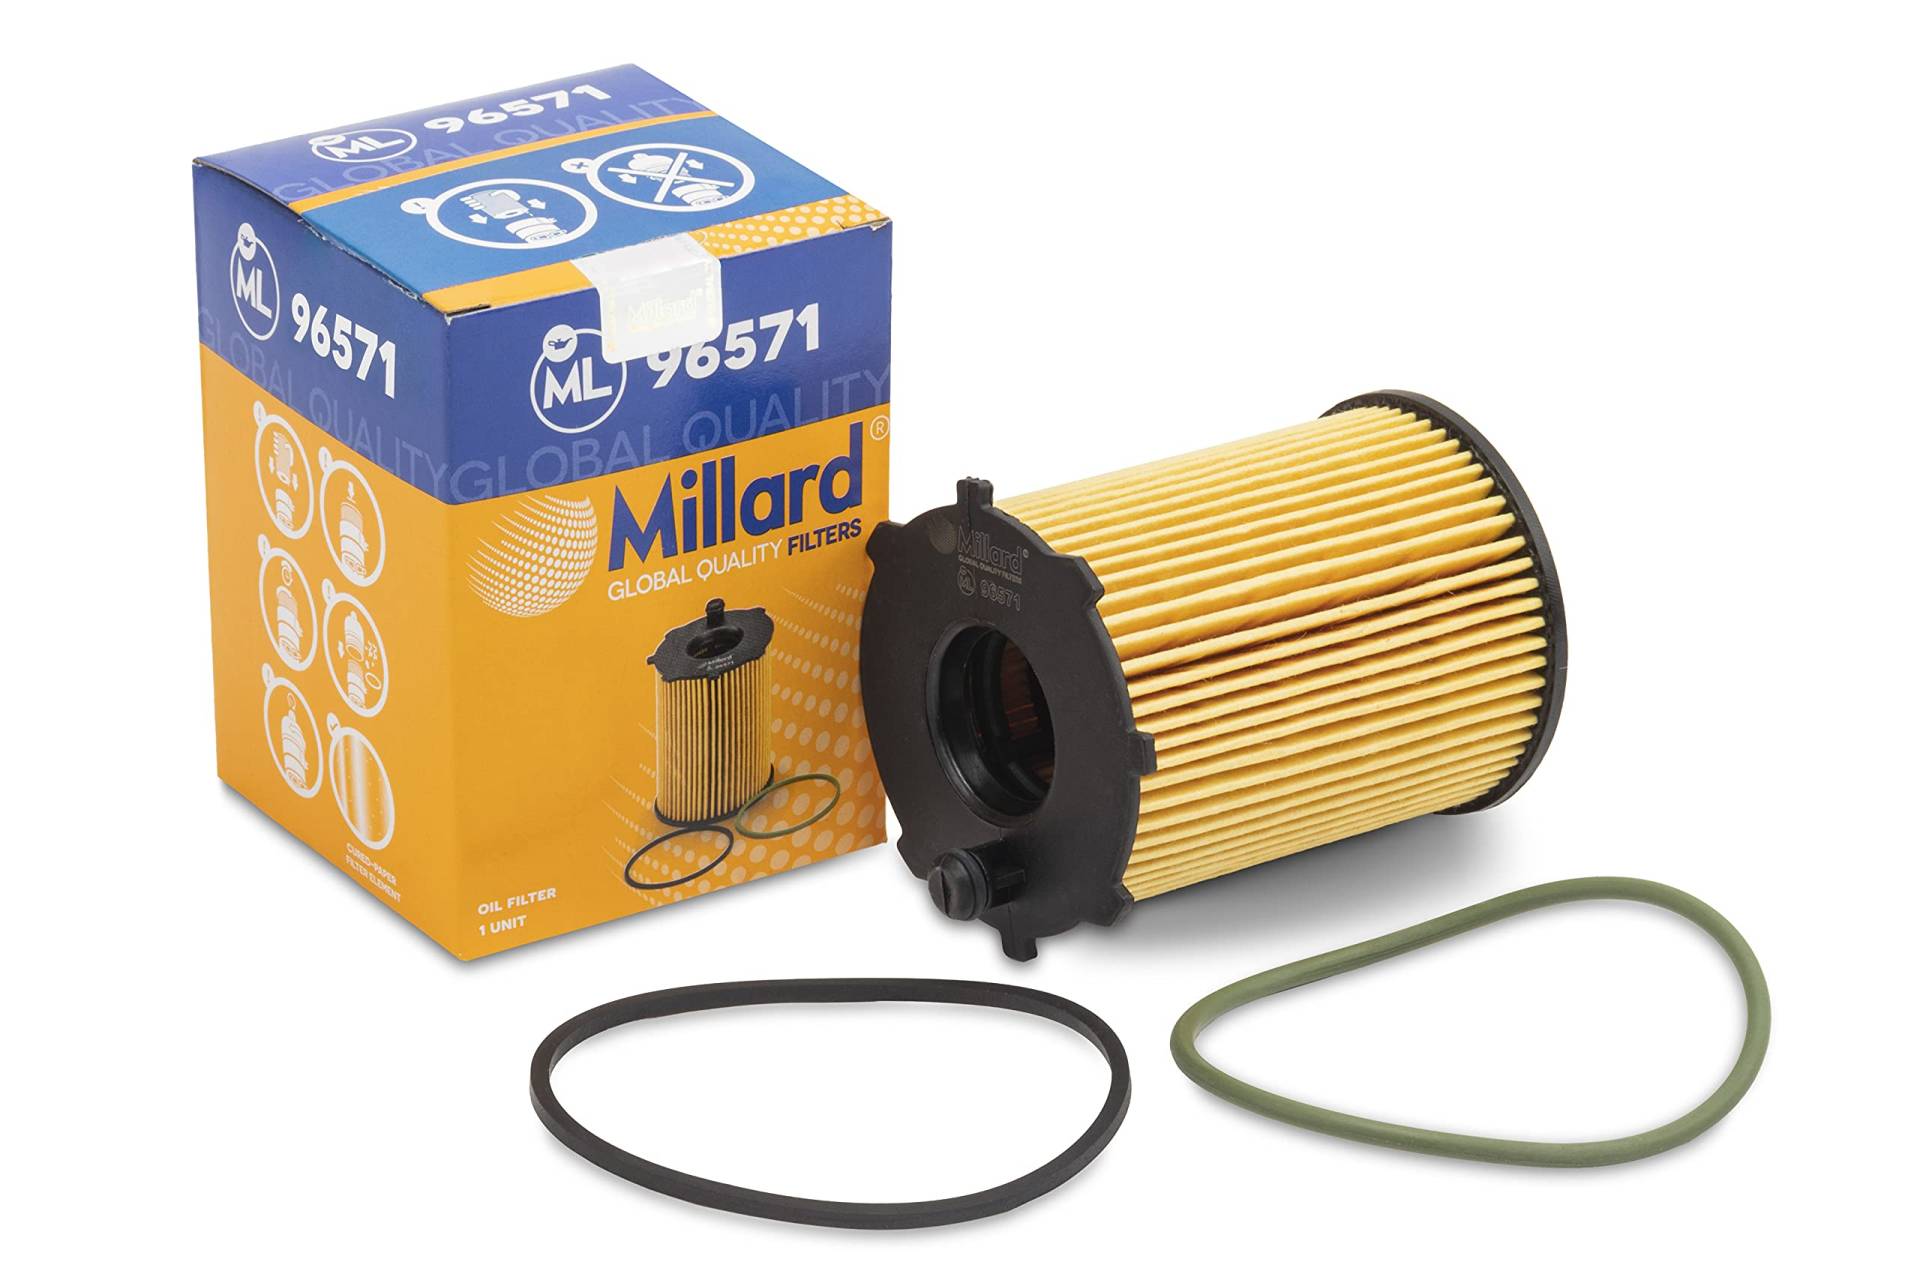 Millard Filters Auto-Ölfilter Millard ML96571 99x72x26x26 mm Cartridge Global Quality von Millard Filters